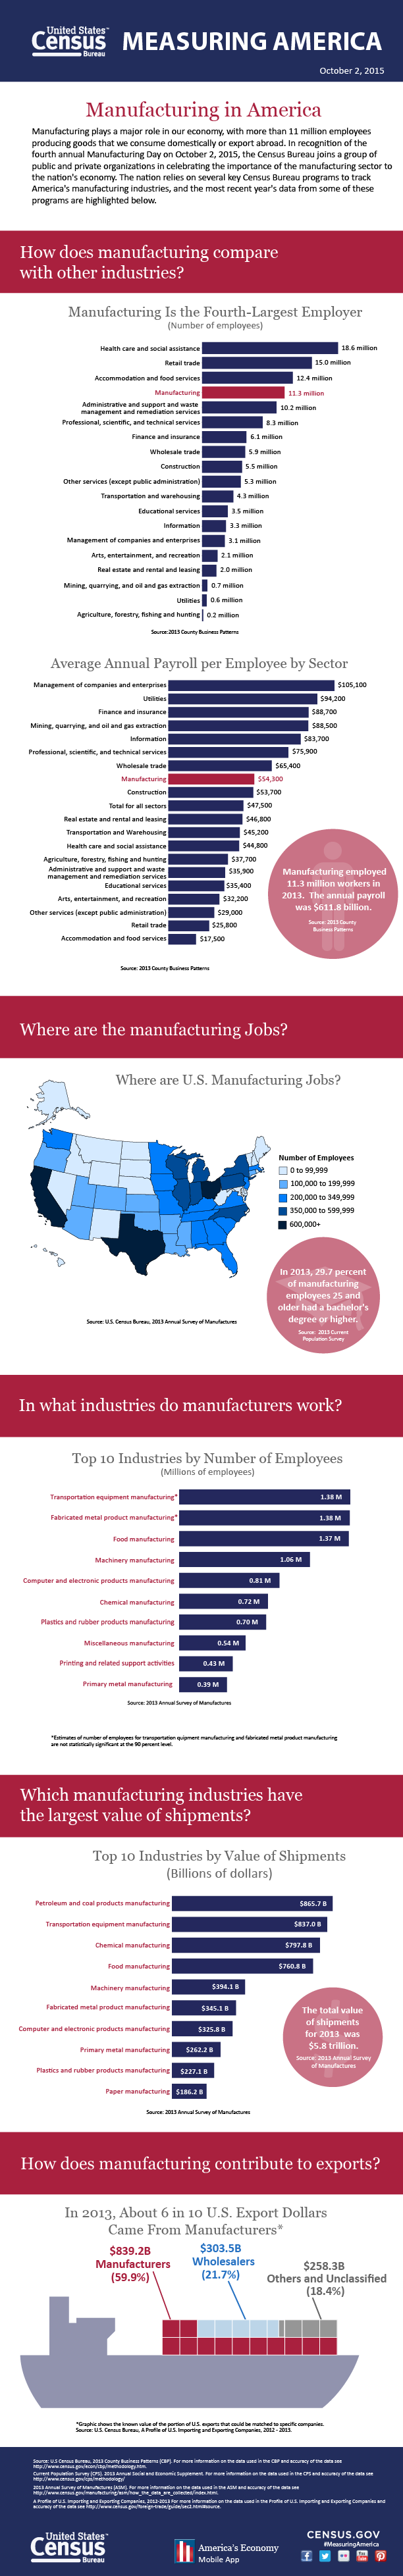 Measuring America: Manufacturing in America 2015